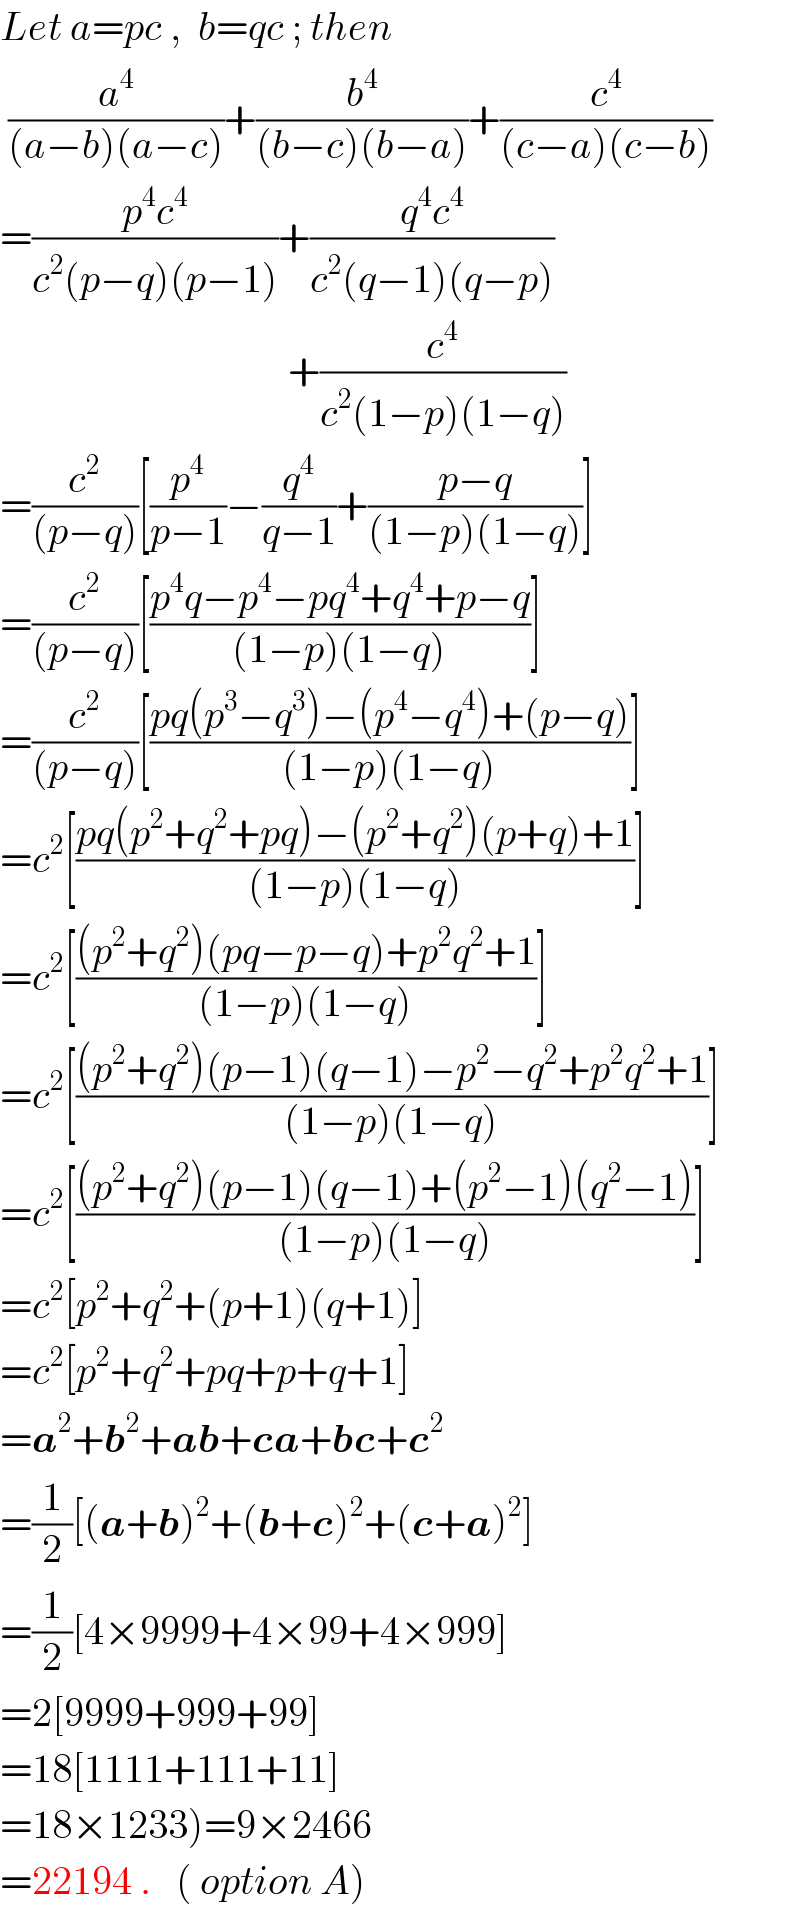 Let a=pc ,  b=qc ; then   (a^4 /((a−b)(a−c)))+(b^4 /((b−c)(b−a)))+(c^4 /((c−a)(c−b)))  =((p^4 c^4 )/(c^2 (p−q)(p−1)))+((q^4 c^4 )/(c^2 (q−1)(q−p)))                                      +(c^4 /(c^2 (1−p)(1−q)))  =(c^2 /((p−q)))[(p^4 /(p−1))−(q^4 /(q−1))+((p−q)/((1−p)(1−q)))]  =(c^2 /((p−q)))[((p^4 q−p^4 −pq^4 +q^4 +p−q)/((1−p)(1−q)))]  =(c^2 /((p−q)))[((pq(p^3 −q^3 )−(p^4 −q^4 )+(p−q))/((1−p)(1−q)))]  =c^2 [((pq(p^2 +q^2 +pq)−(p^2 +q^2 )(p+q)+1)/((1−p)(1−q)))]  =c^2 [(((p^2 +q^2 )(pq−p−q)+p^2 q^2 +1)/((1−p)(1−q)))]  =c^2 [(((p^2 +q^2 )(p−1)(q−1)−p^2 −q^2 +p^2 q^2 +1)/((1−p)(1−q)))]  =c^2 [(((p^2 +q^2 )(p−1)(q−1)+(p^2 −1)(q^2 −1))/((1−p)(1−q)))]  =c^2 [p^2 +q^2 +(p+1)(q+1)]  =c^2 [p^2 +q^2 +pq+p+q+1]  =a^2 +b^2 +ab+ca+bc+c^2   =(1/2)[(a+b)^2 +(b+c)^2 +(c+a)^2 ]  =(1/2)[4×9999+4×99+4×999]  =2[9999+999+99]  =18[1111+111+11]  =18×1233)=9×2466  =22194 .   ( option A)  